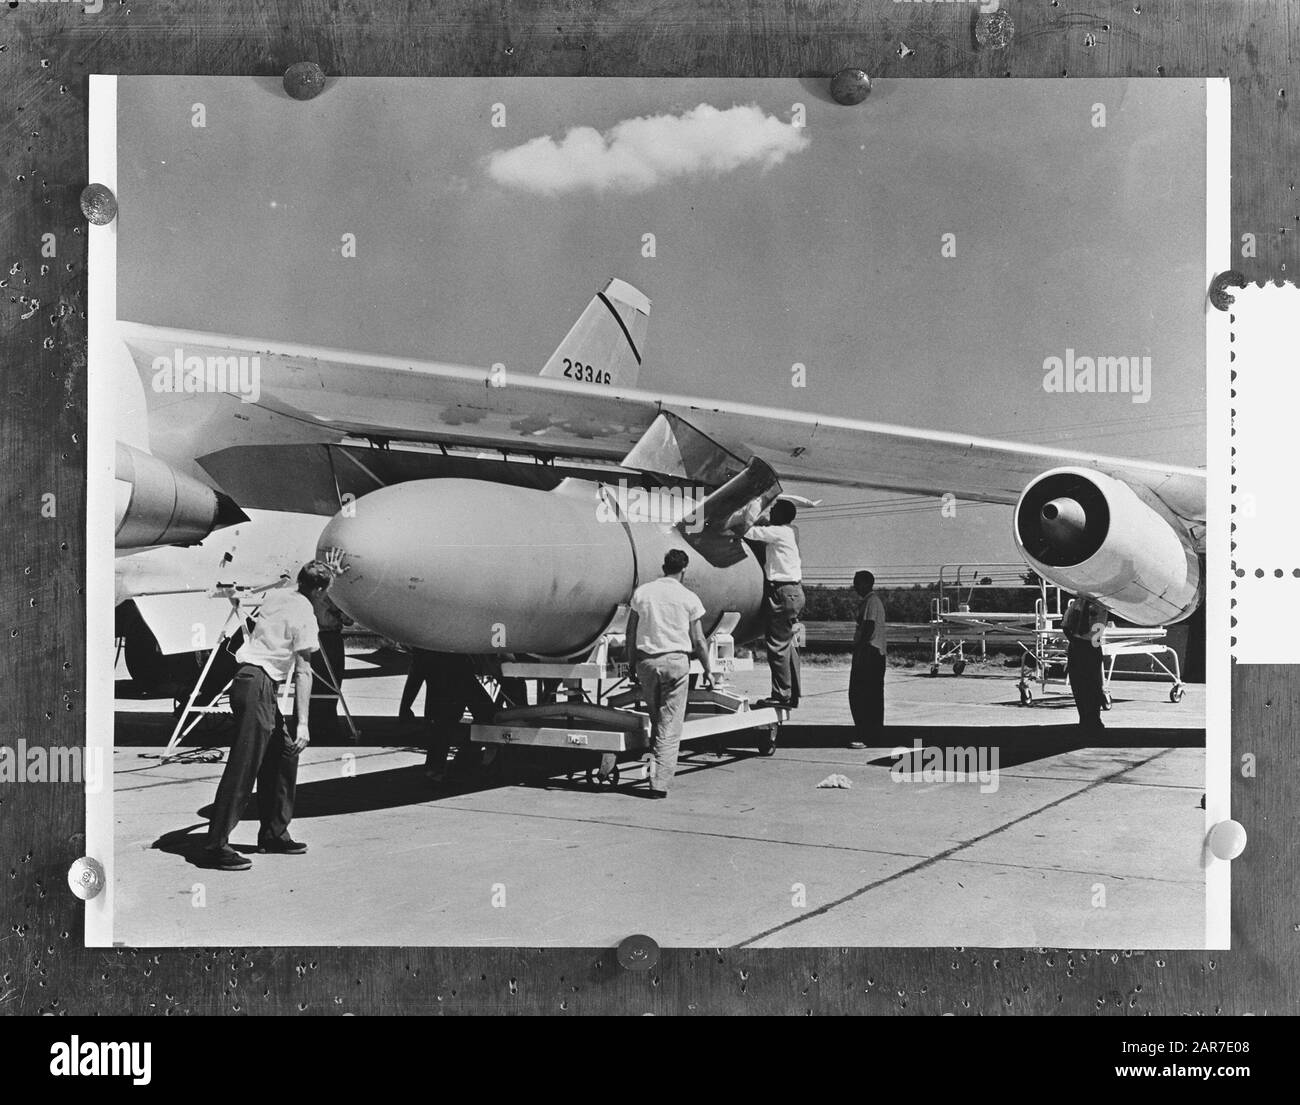 Hängen eines externen Kraftstofftanks unter dem Flügel eines B-47-Bombers der USAF Datum: 17. Februar 1956 Schlagwörter: Luftfahrt, Flugzeug Stockfoto